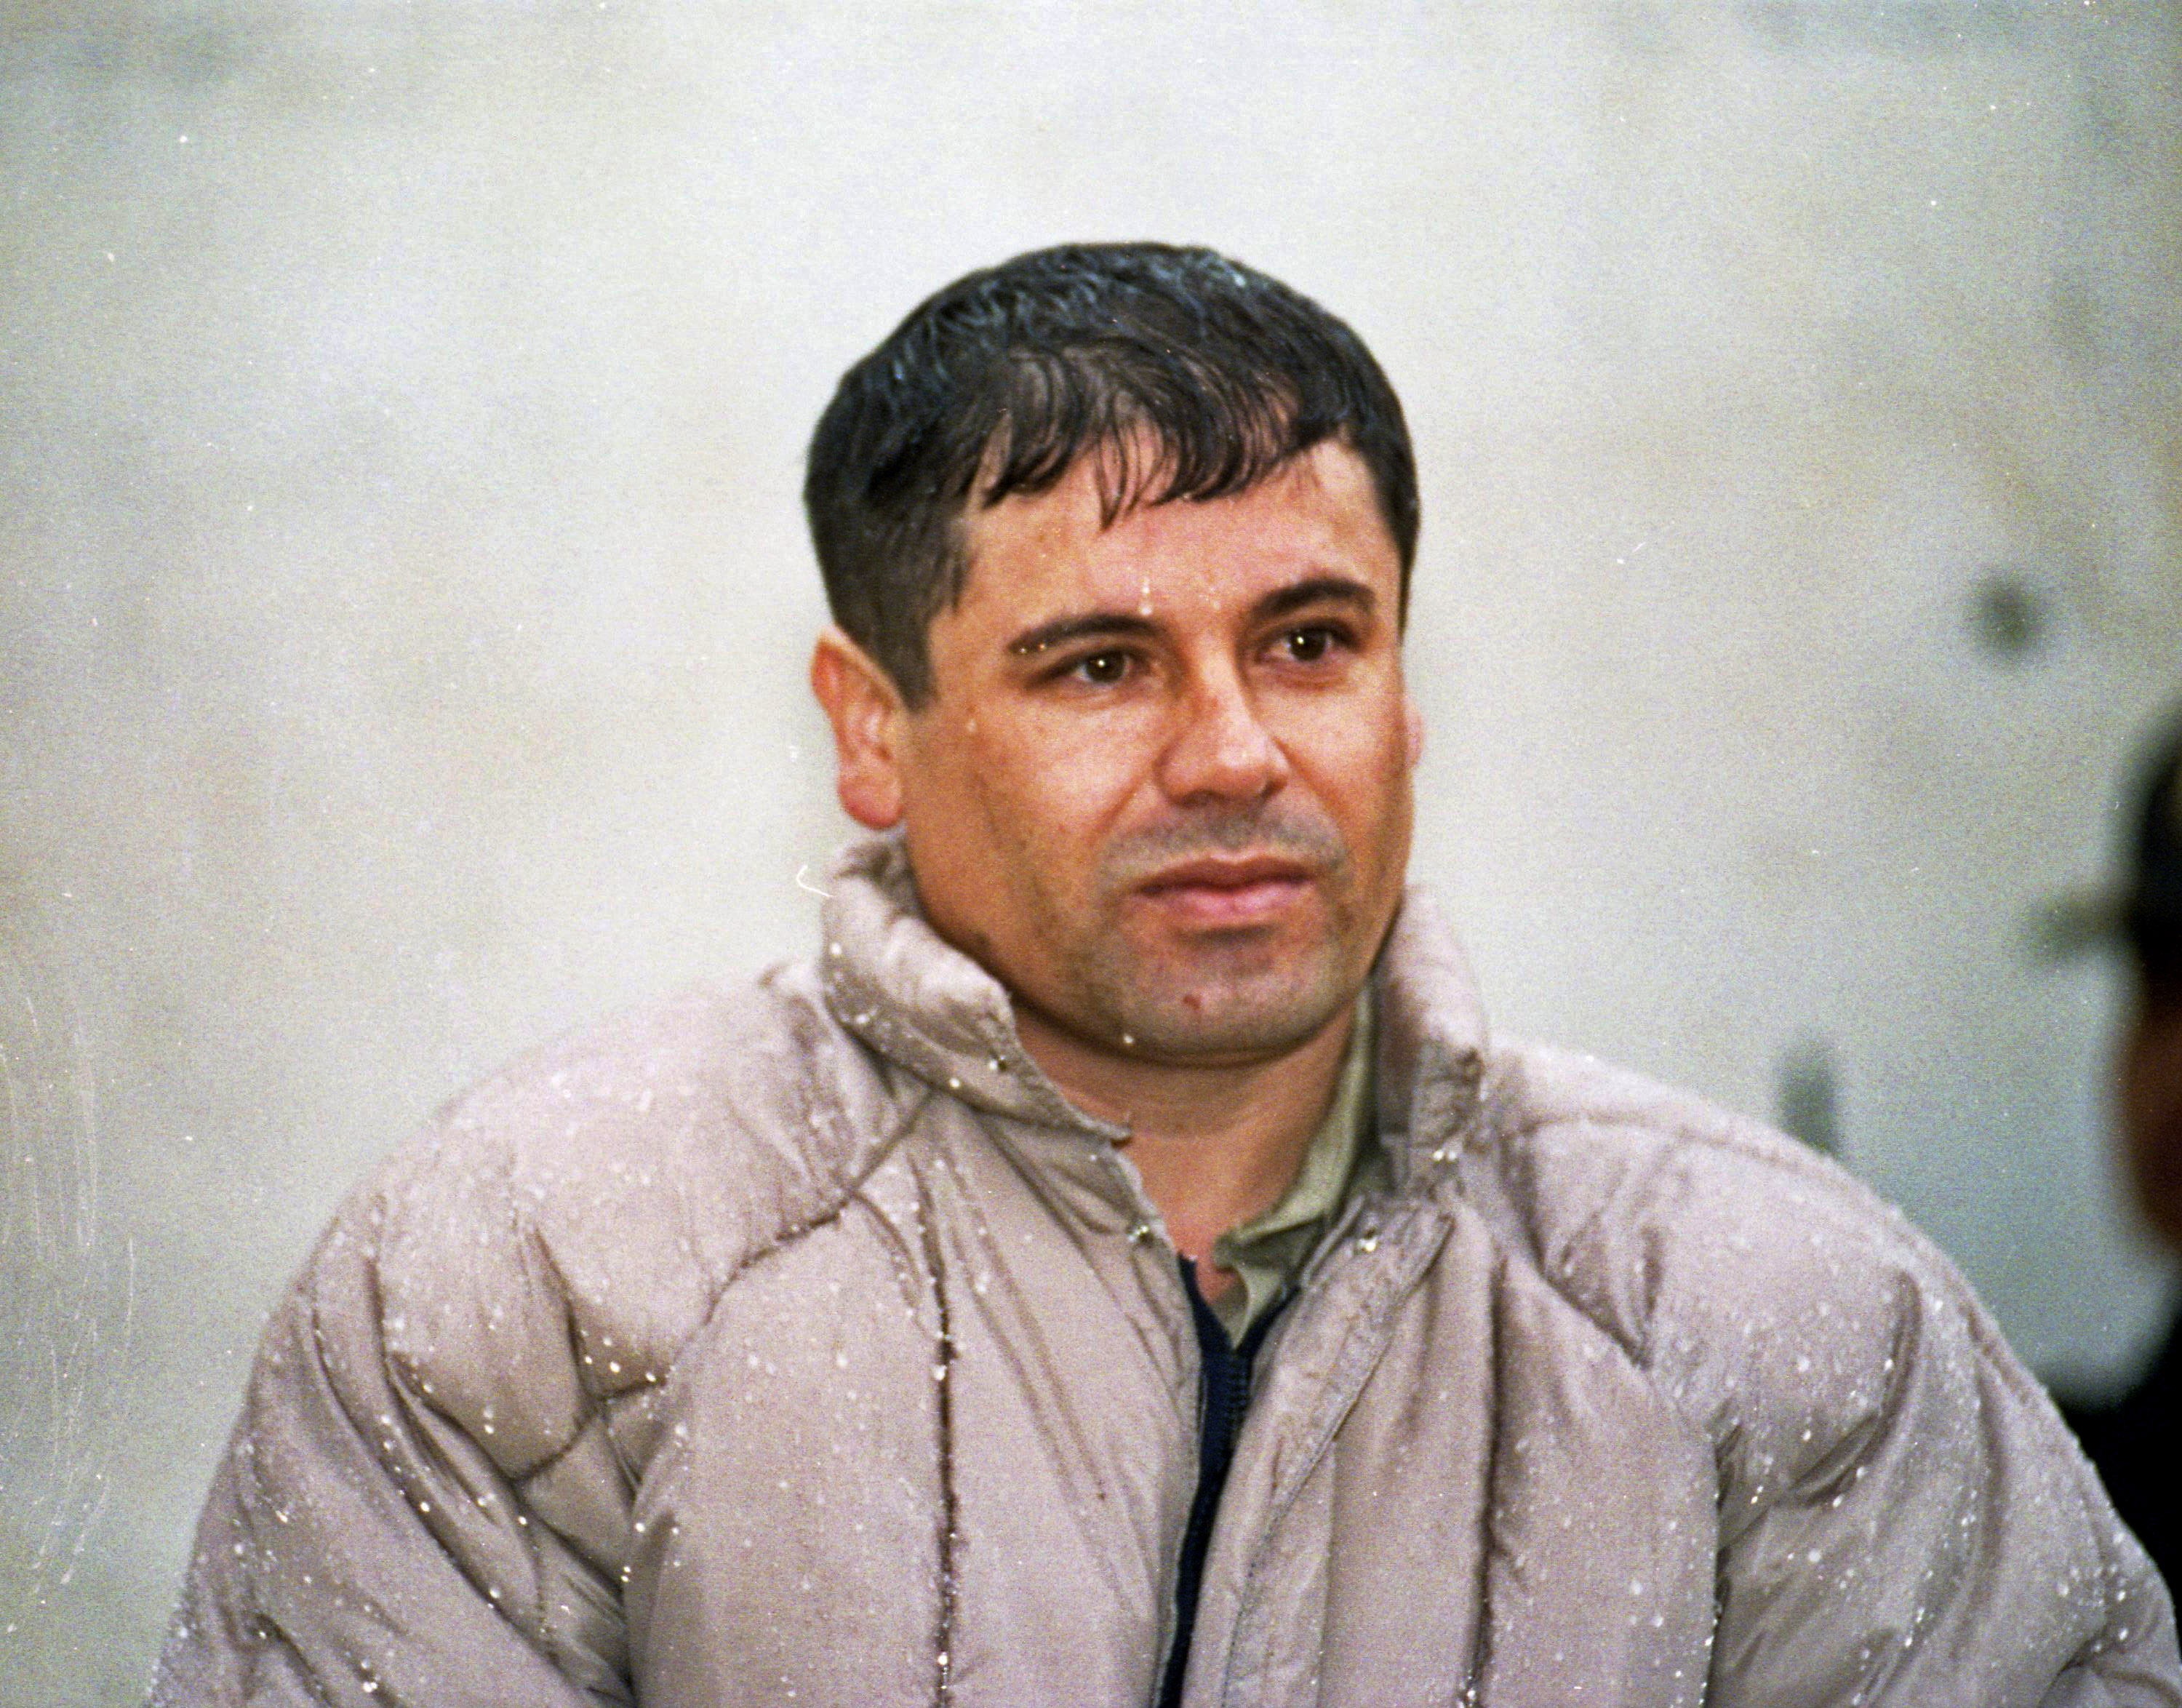 Joaquin Guzman, ledare för Sinaloakartellen, greps 1993 men flydde 2001.